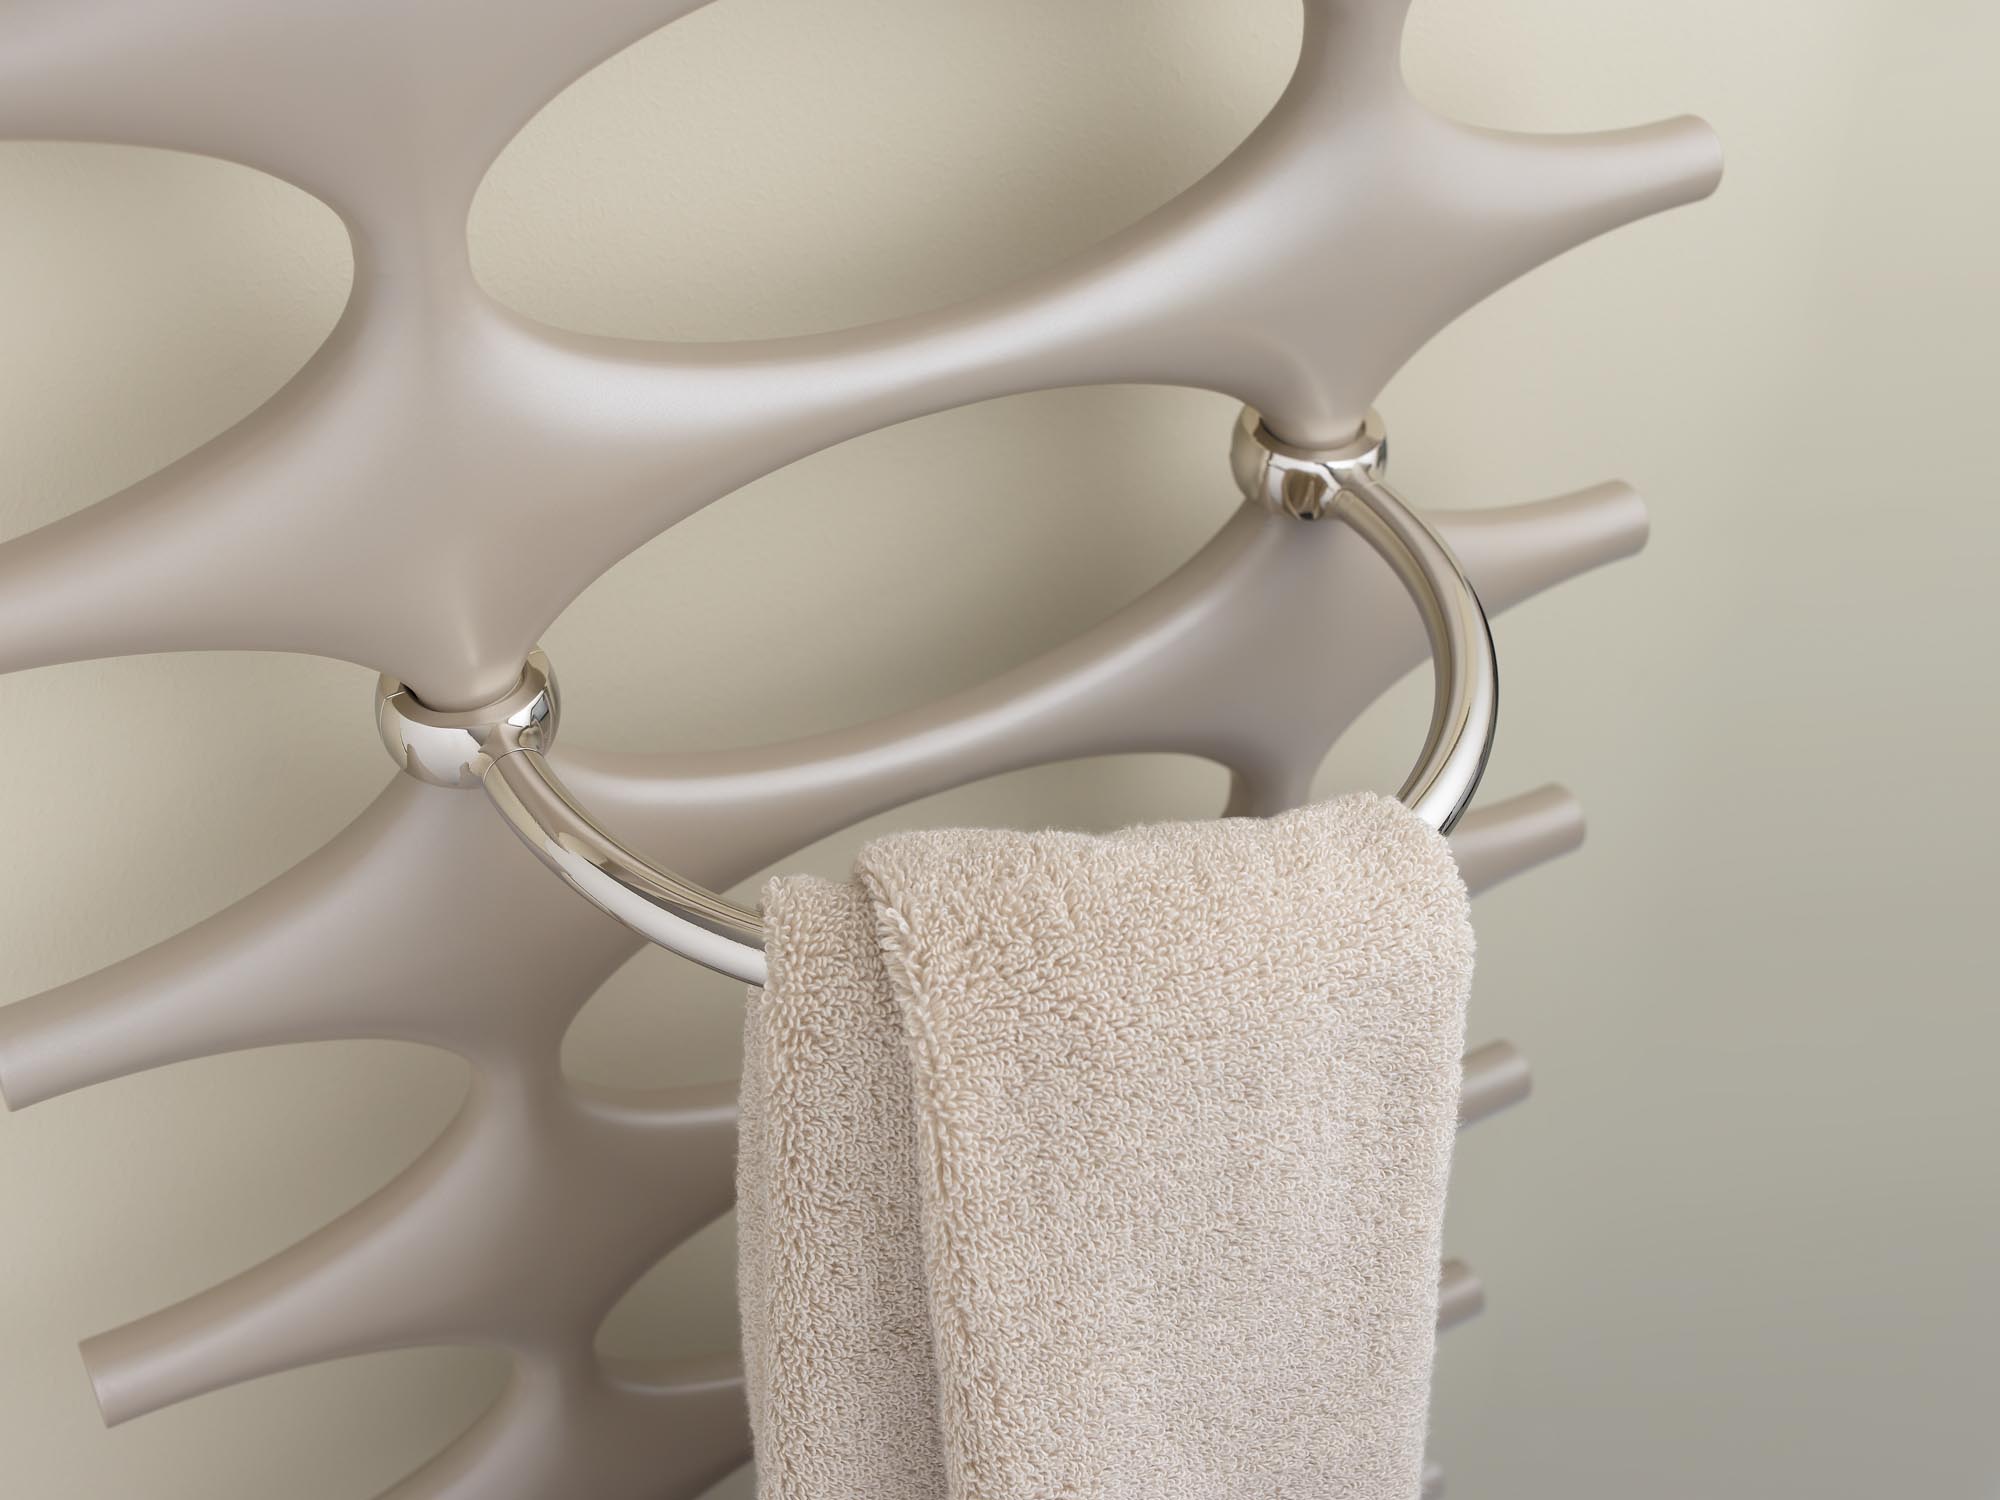 Obręcz na ręczniki do grzejników dekoracyjnych i łazienkowych Kermi Ideos.